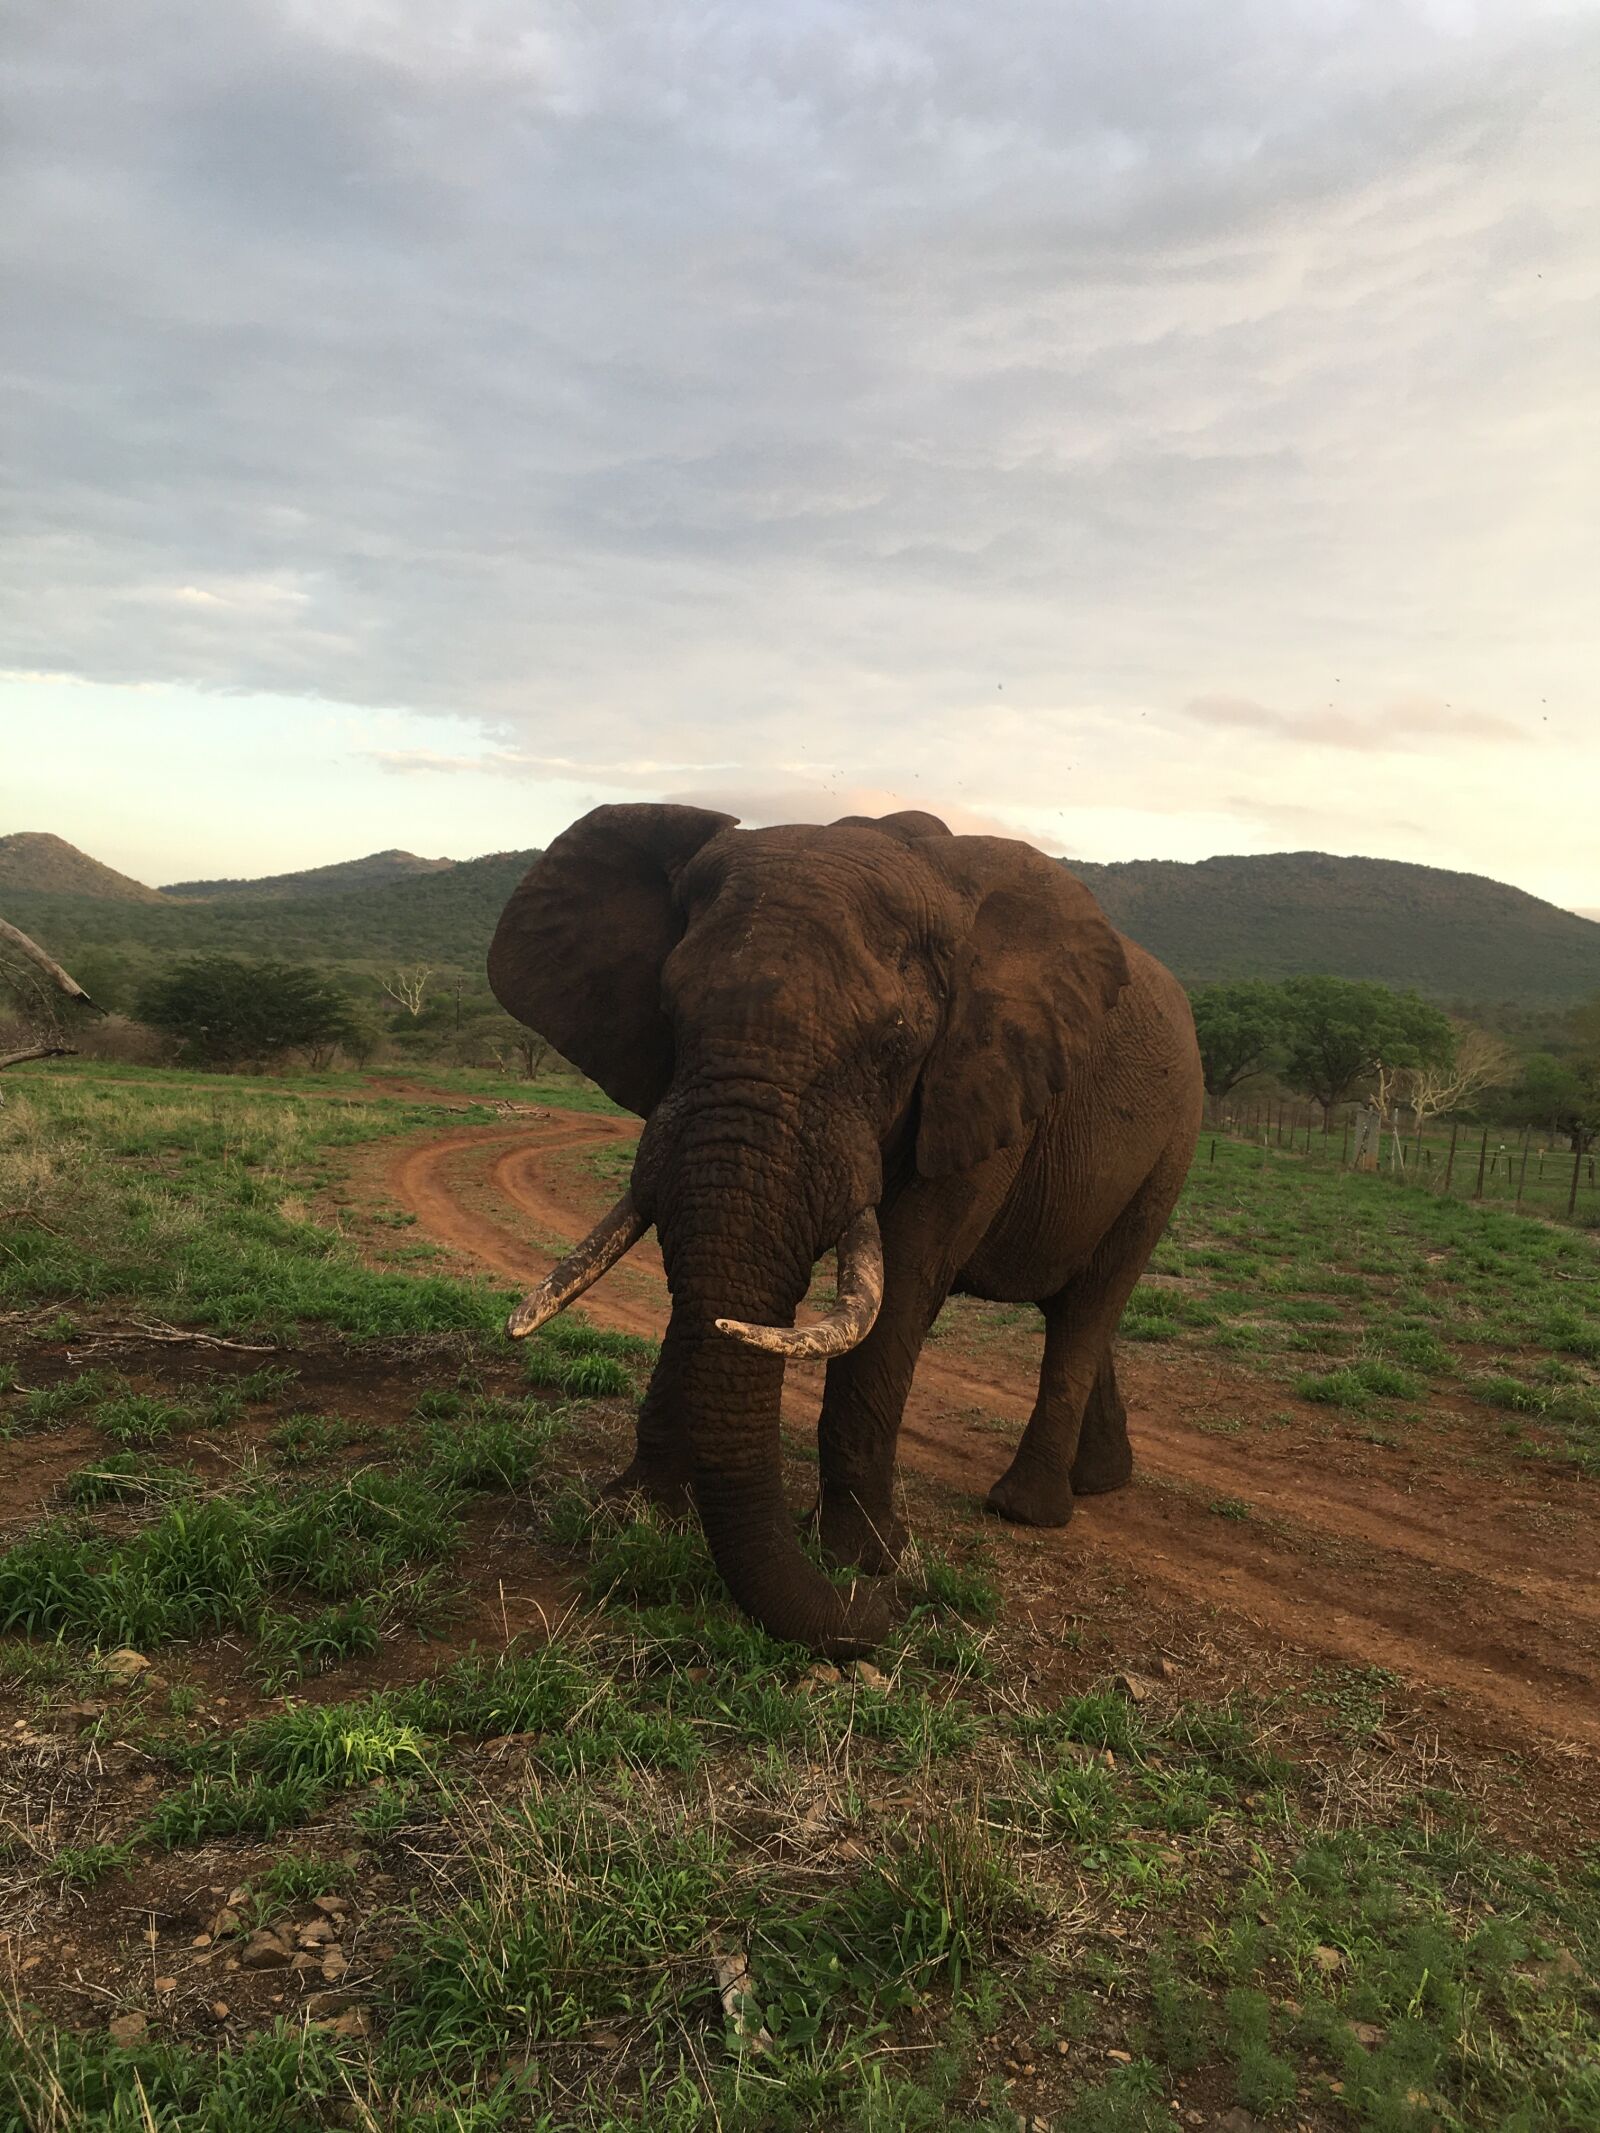 Apple iPhone SE + iPhone SE back camera 4.15mm f/2.2 sample photo. Elephant, africa, large mammal photography